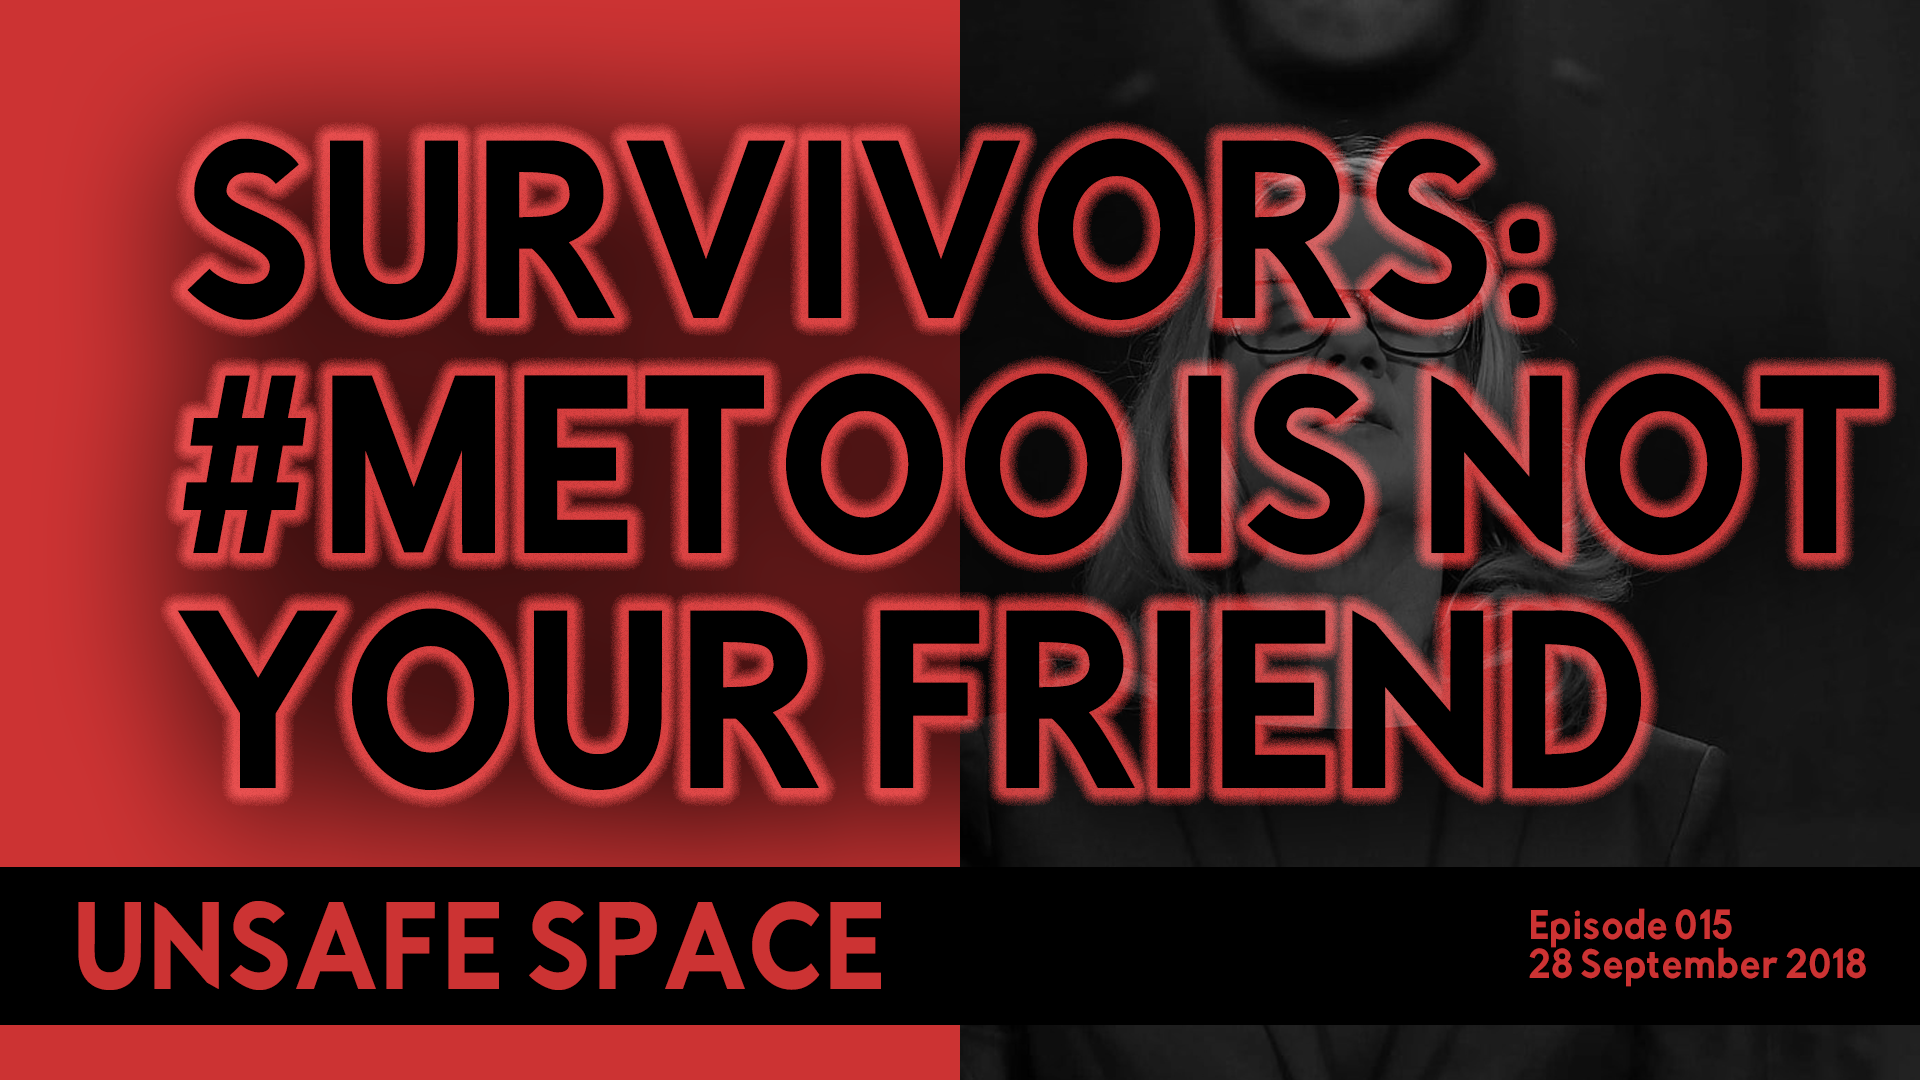 [Episode 015] Survivors: #MeToo is not your friend